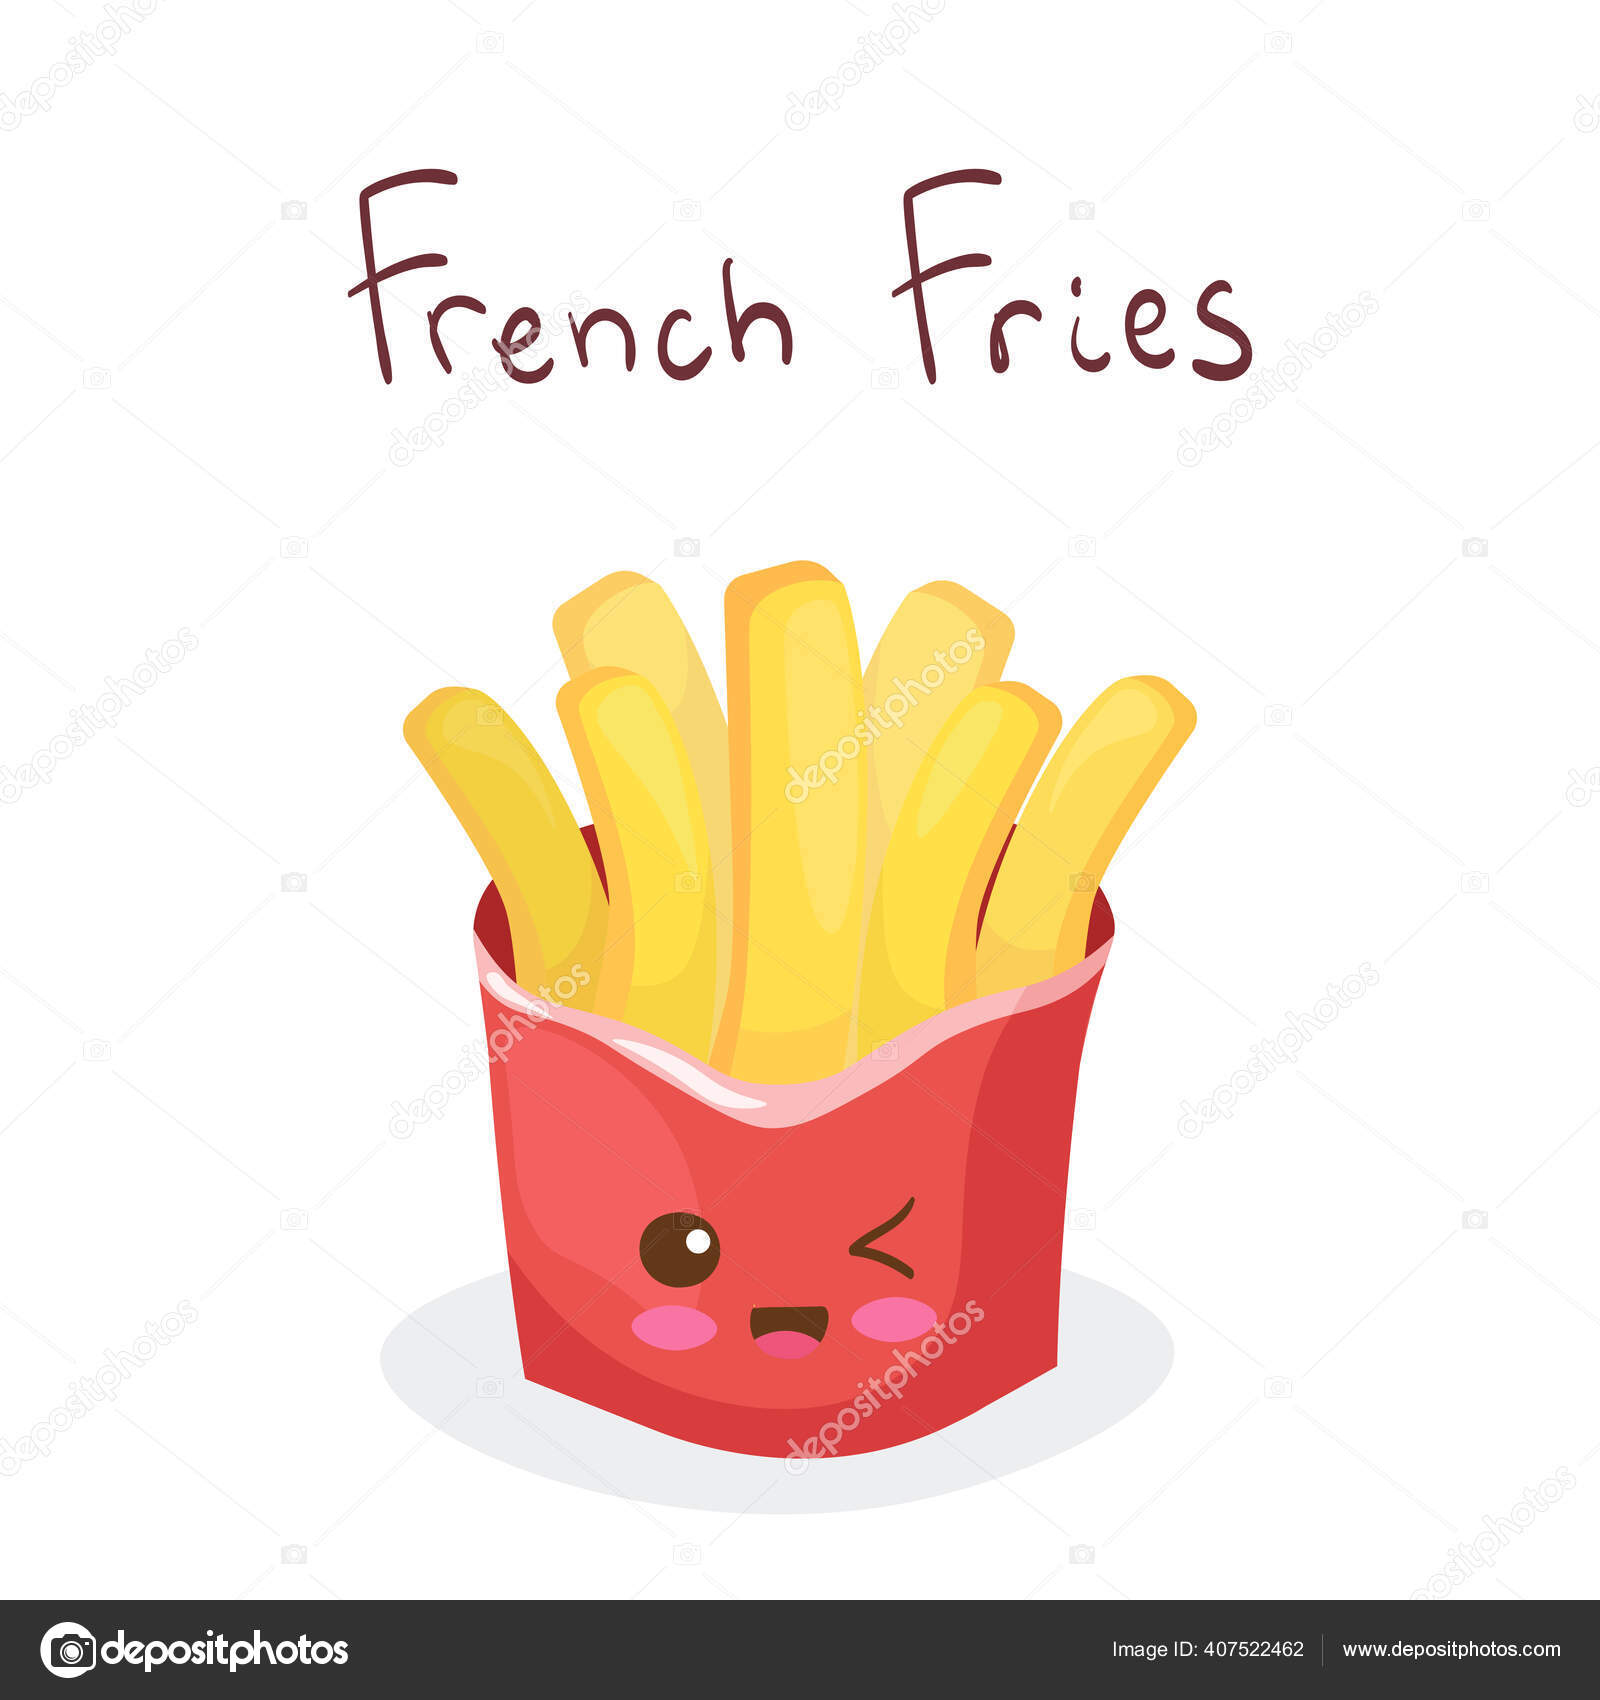 Bạn đang tìm kiếm vector French Fries đồ họa chất lượng cao để trang trí cho quán ăn của mình? Hãy để chúng tôi giúp bạn! Chúng tôi cung cấp đa dạng mẫu vector French Fries đẹp mắt và độc đáo mang đến sự mới mẻ cho quán của bạn. 